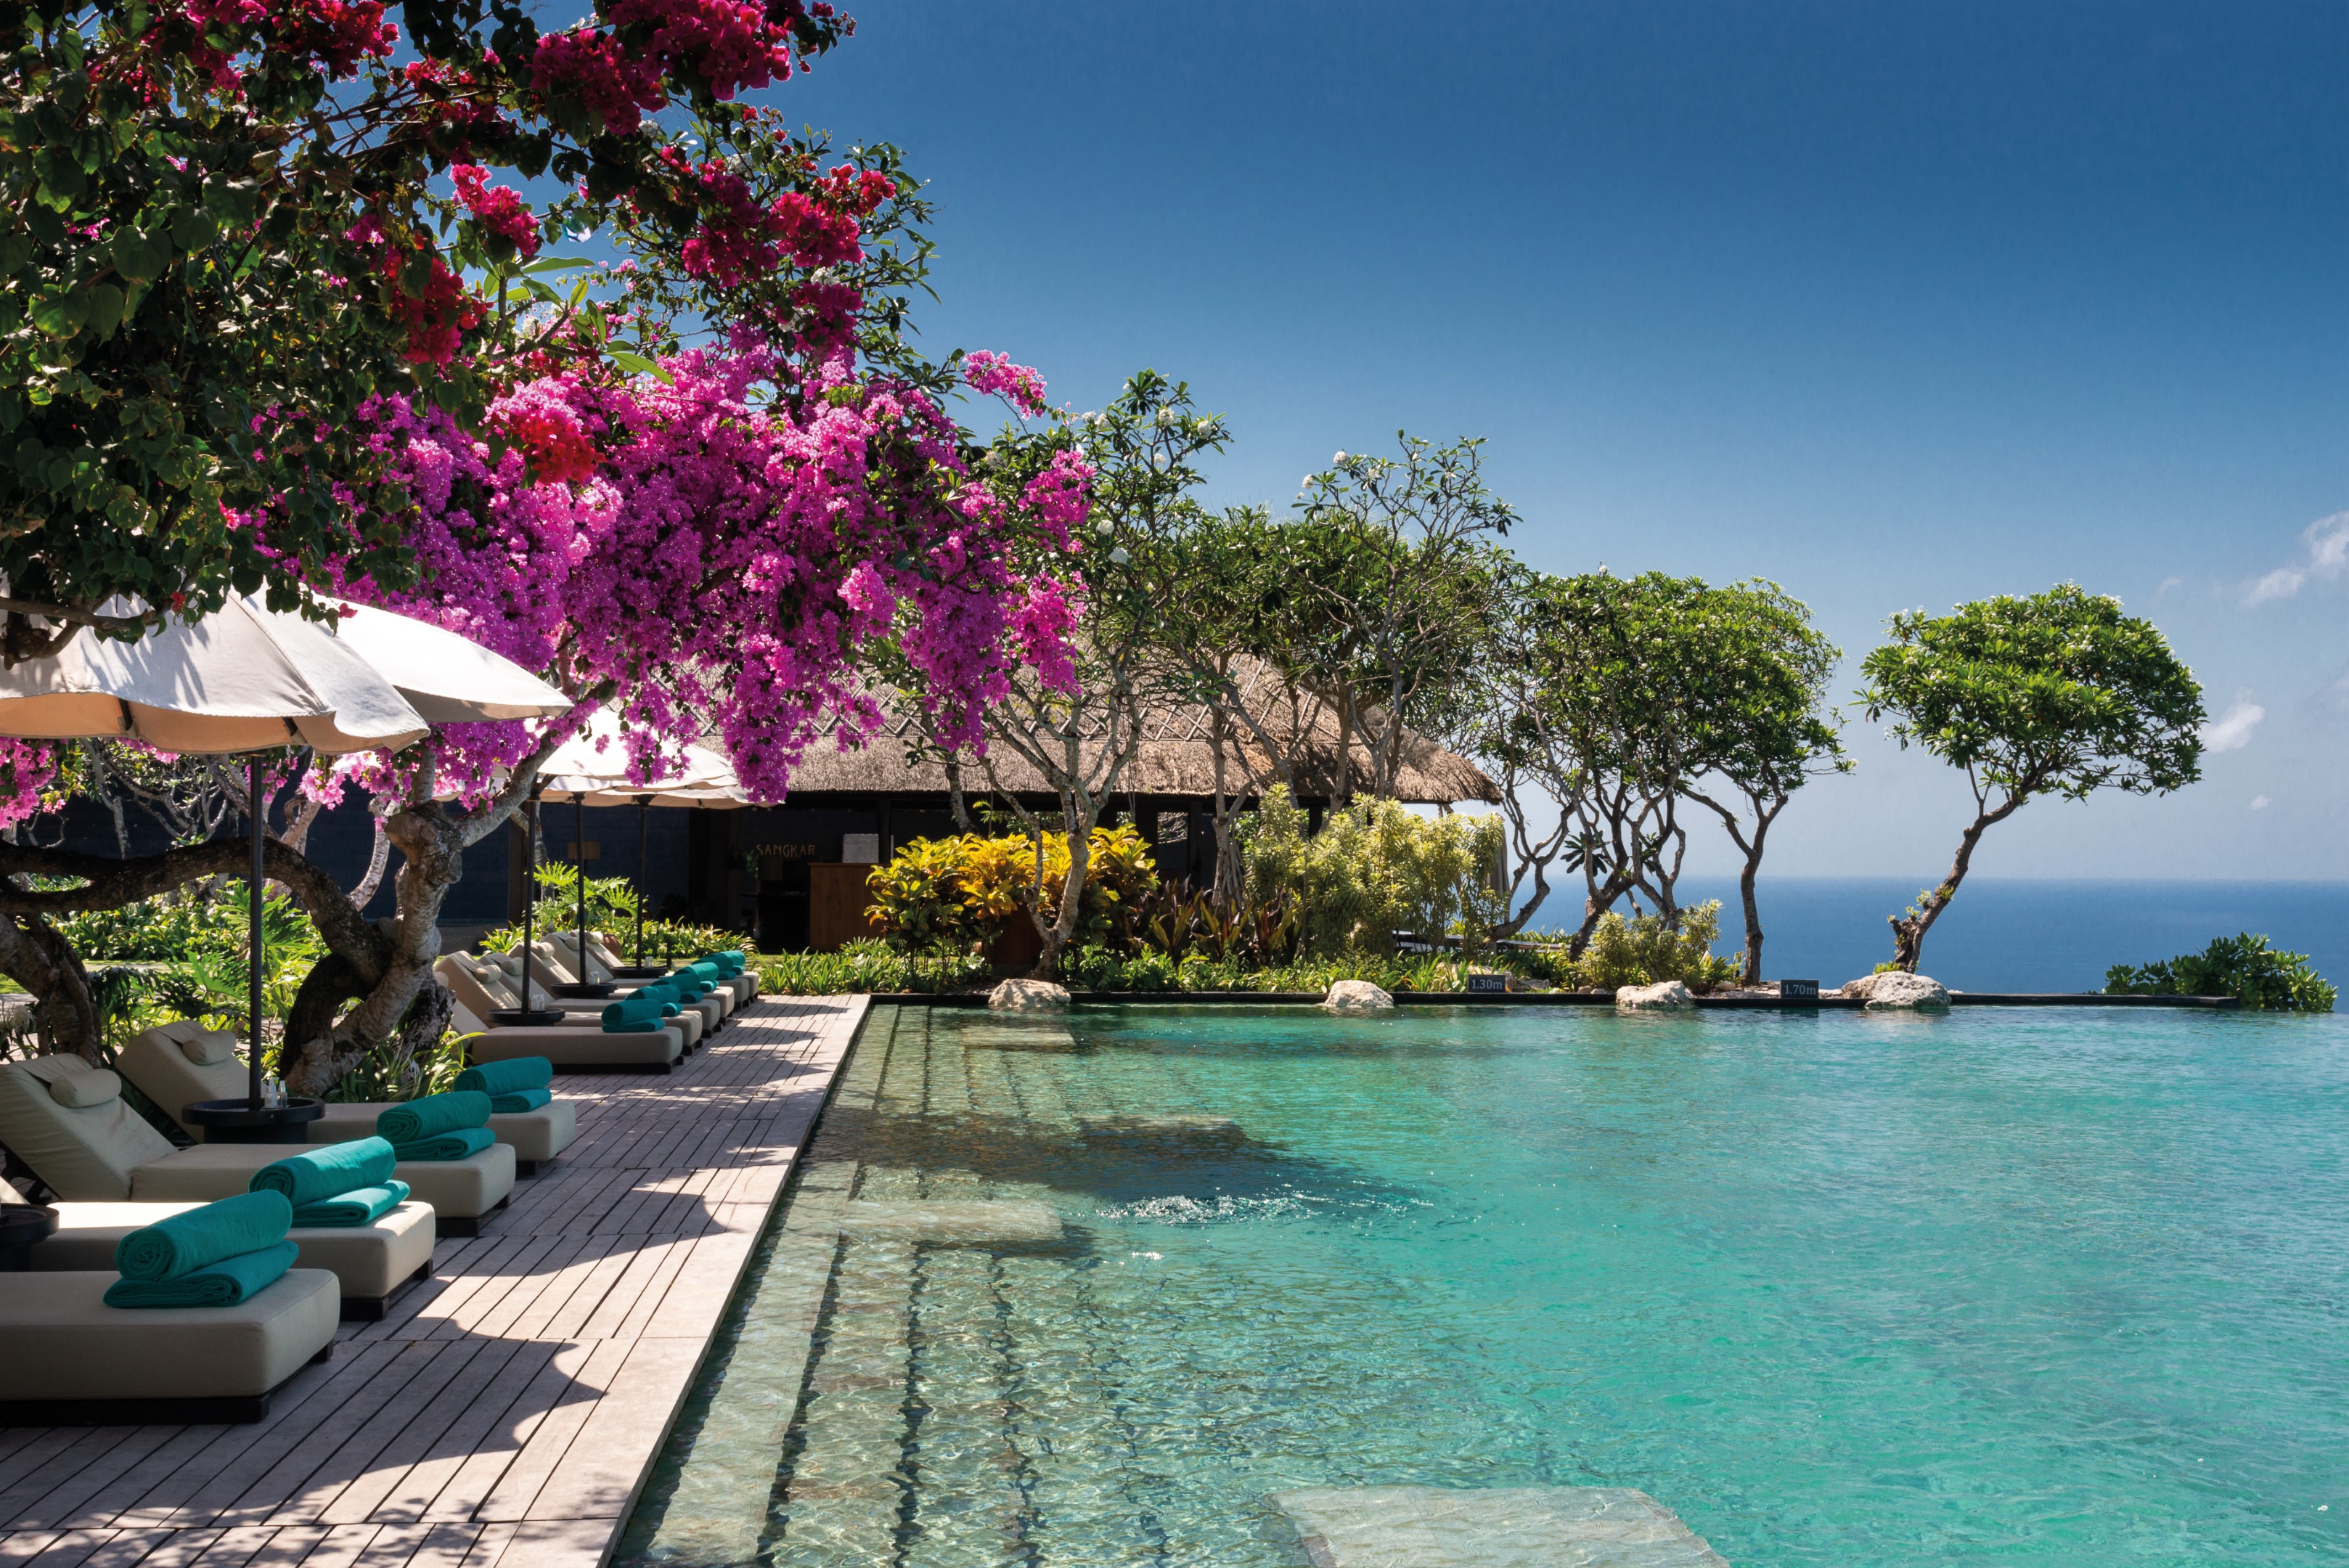 bulgari resort bali holiday getaway, Plan Your Holiday Getaway at Uluwatu&#8217;s Sparkling Solitaire, Bulgari Resort Bali